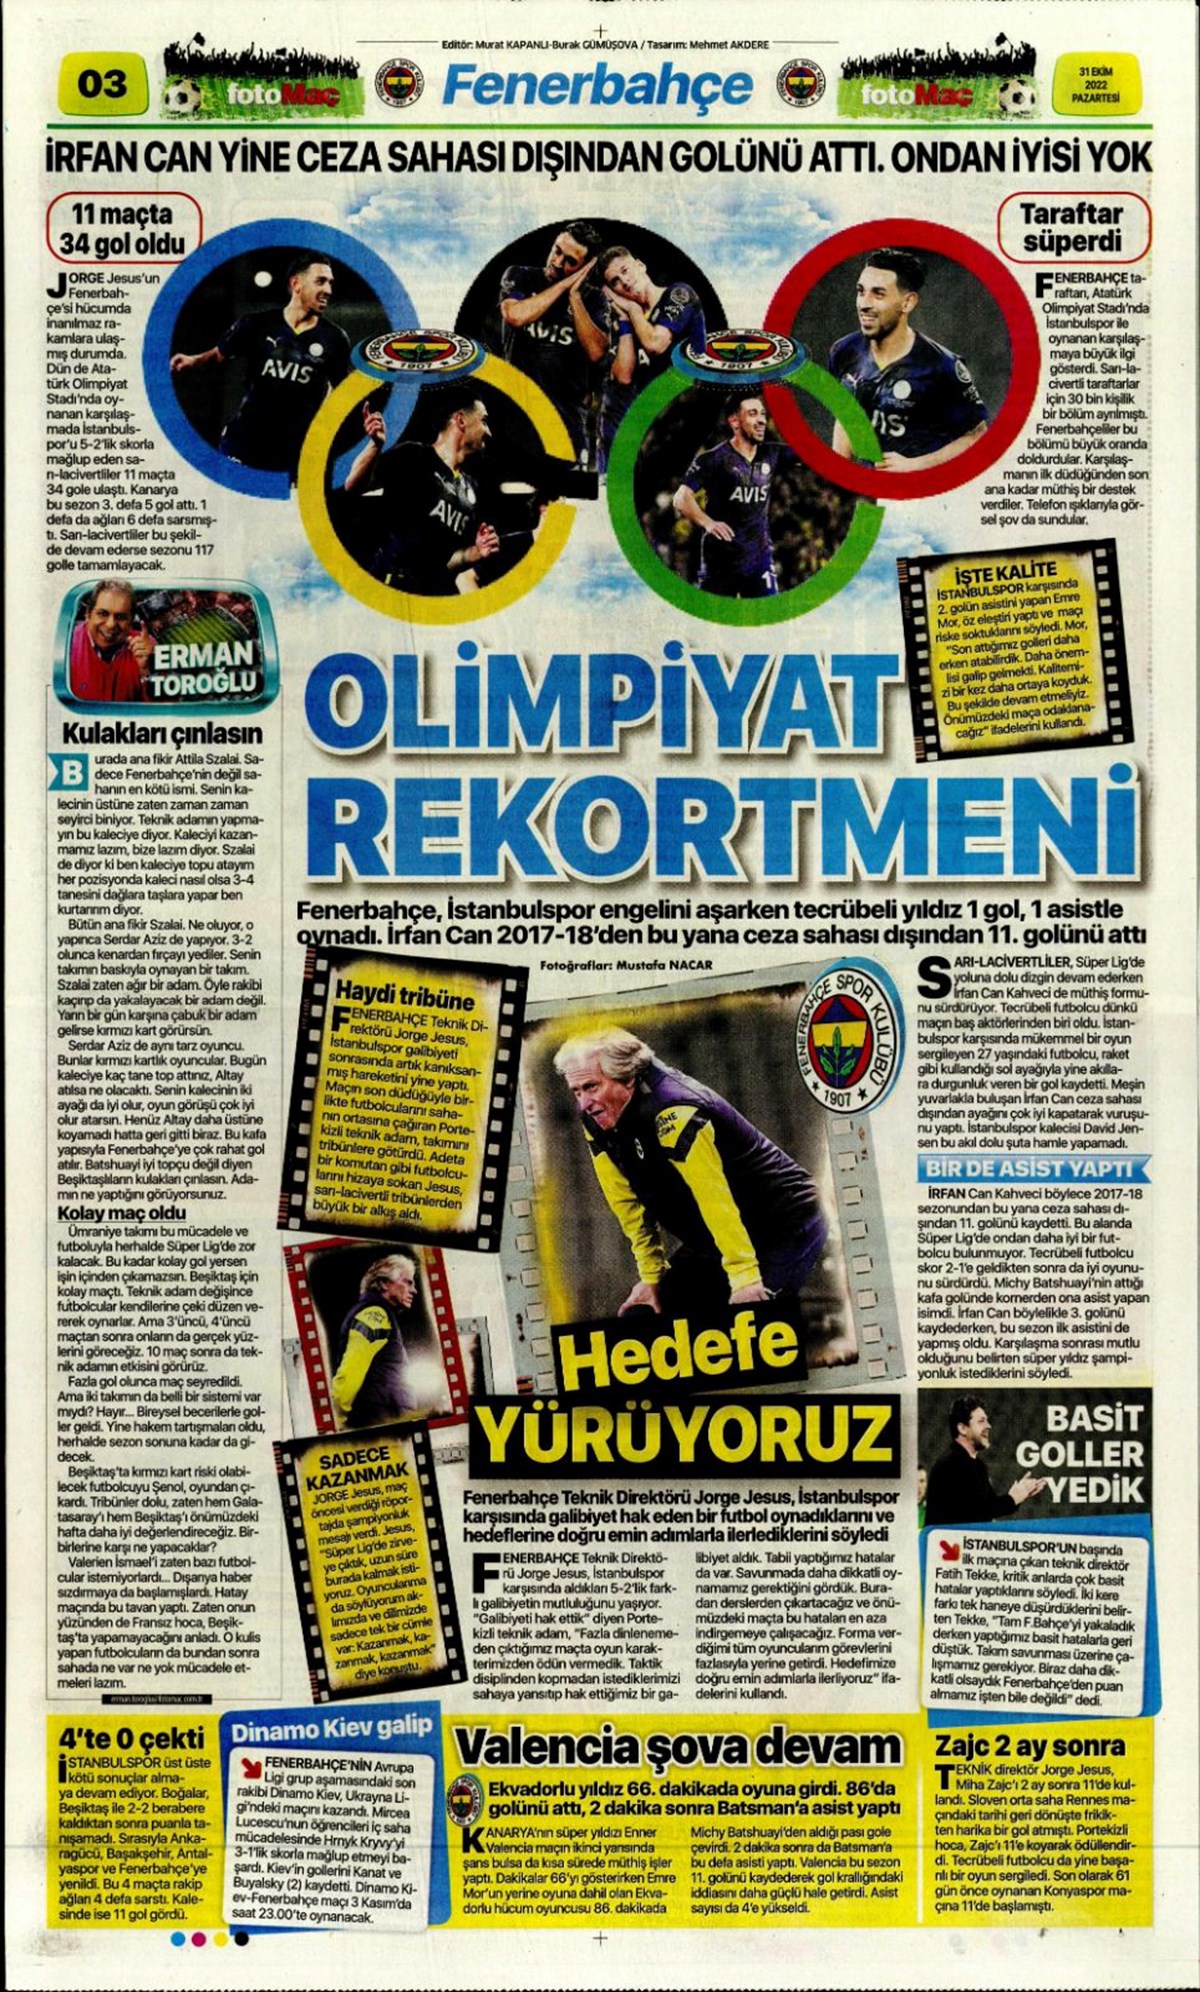 Günün spor manşetleri (31 Ekim 2022)